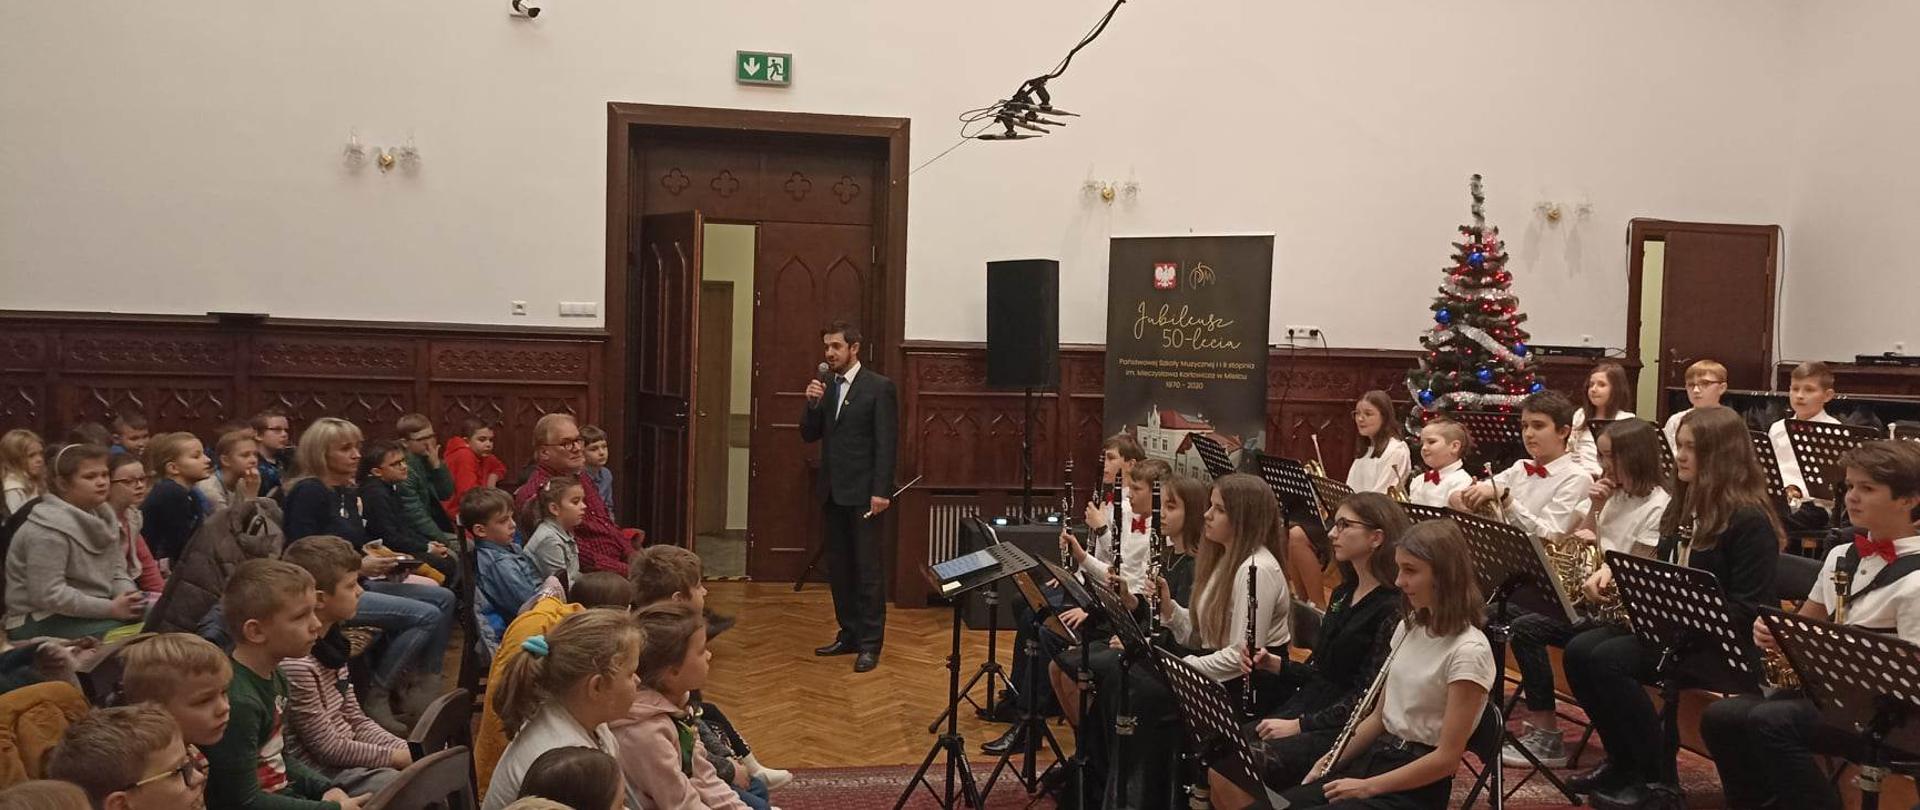 zdjęcie z audycji dla najmłodszych uczniów szkół podstawowych przedstawiające orkiestrę dętą PSM I stopnia naszej szkoły z dyrygentem Piotrem Rysiewiczem na przedzie oraz uczestników audycji z lewej strony zdjęcia